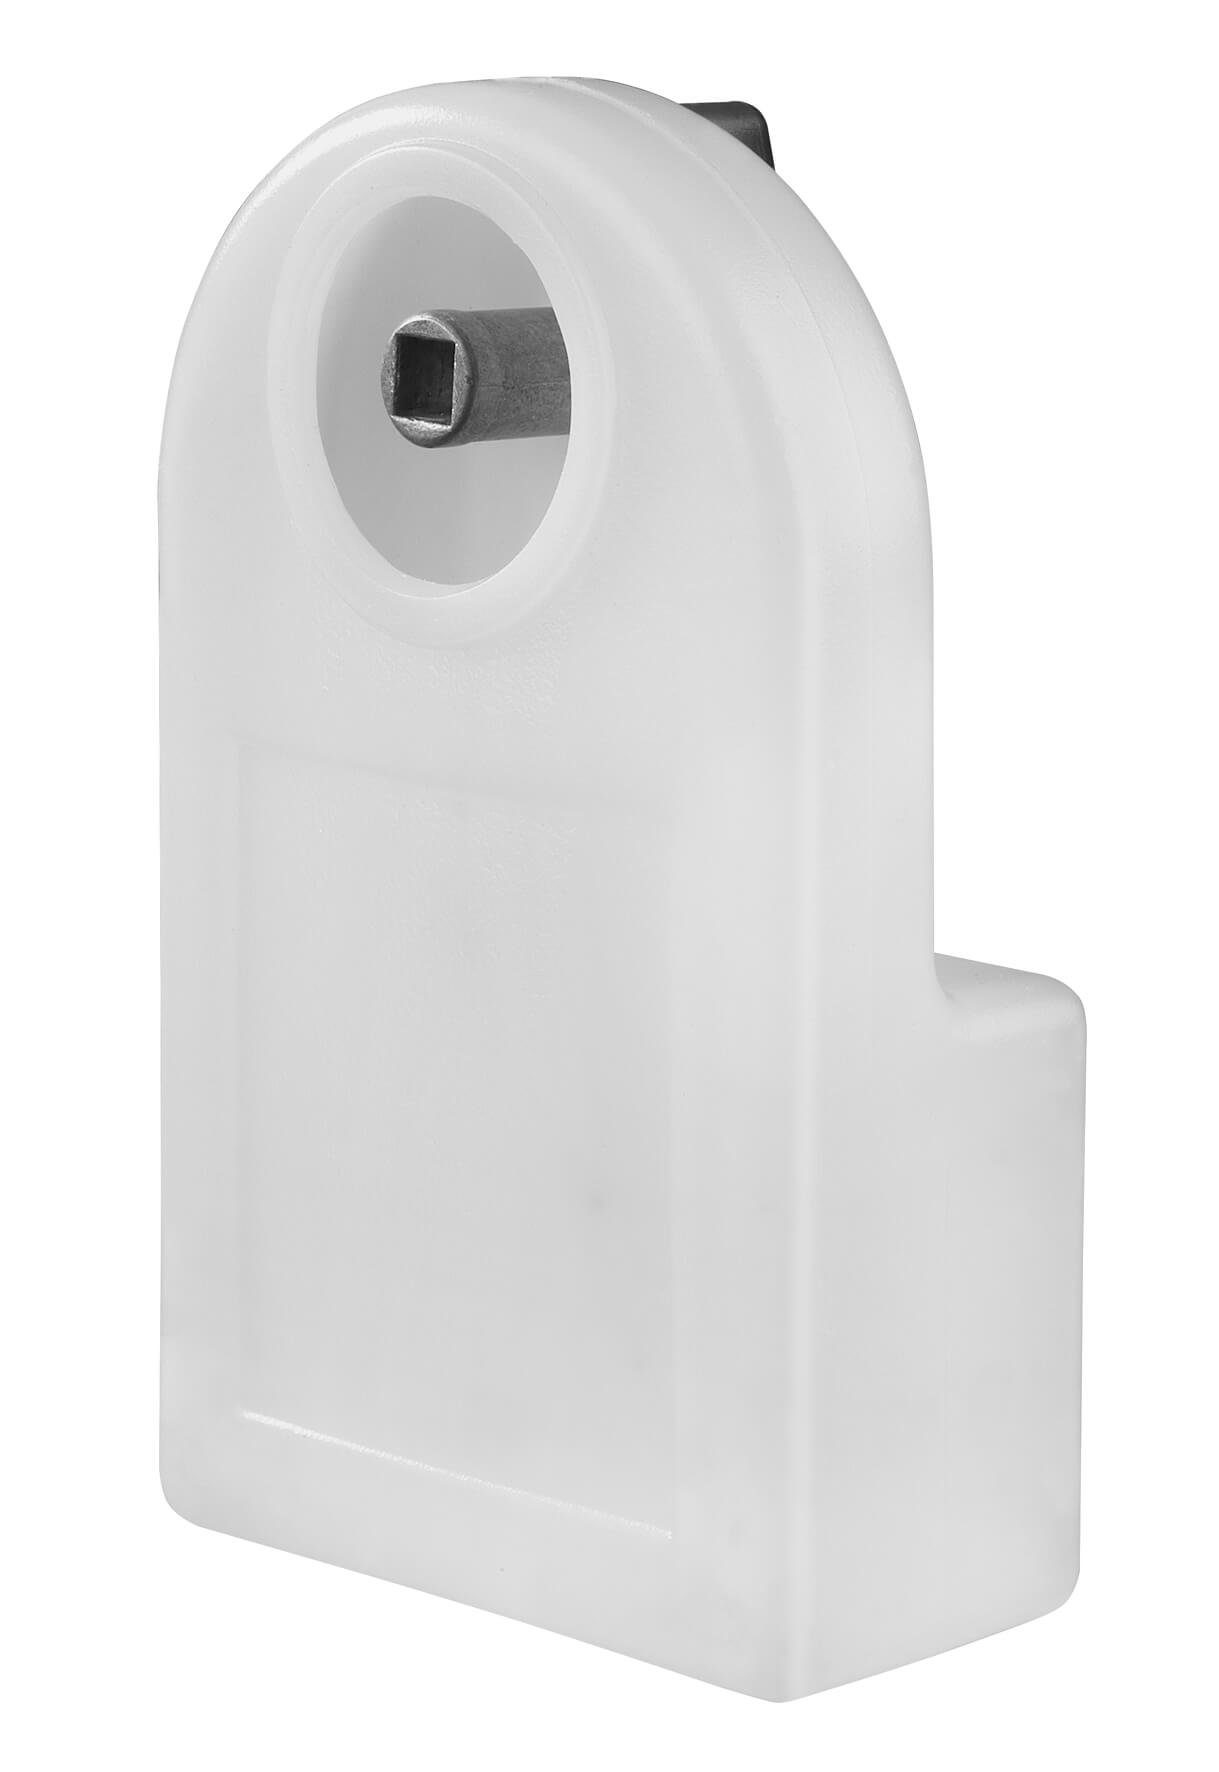 EUROM Heizkörper Eurom Heizkörper-Entlüfter mit Auffangschale 80 ml und  Entlüftungsschlüssel (5 mm Vierkantschlüssel), Mit Auffangbehälter für  auslaufendes Wasser, für alle gängigen Heizkörper geeignet